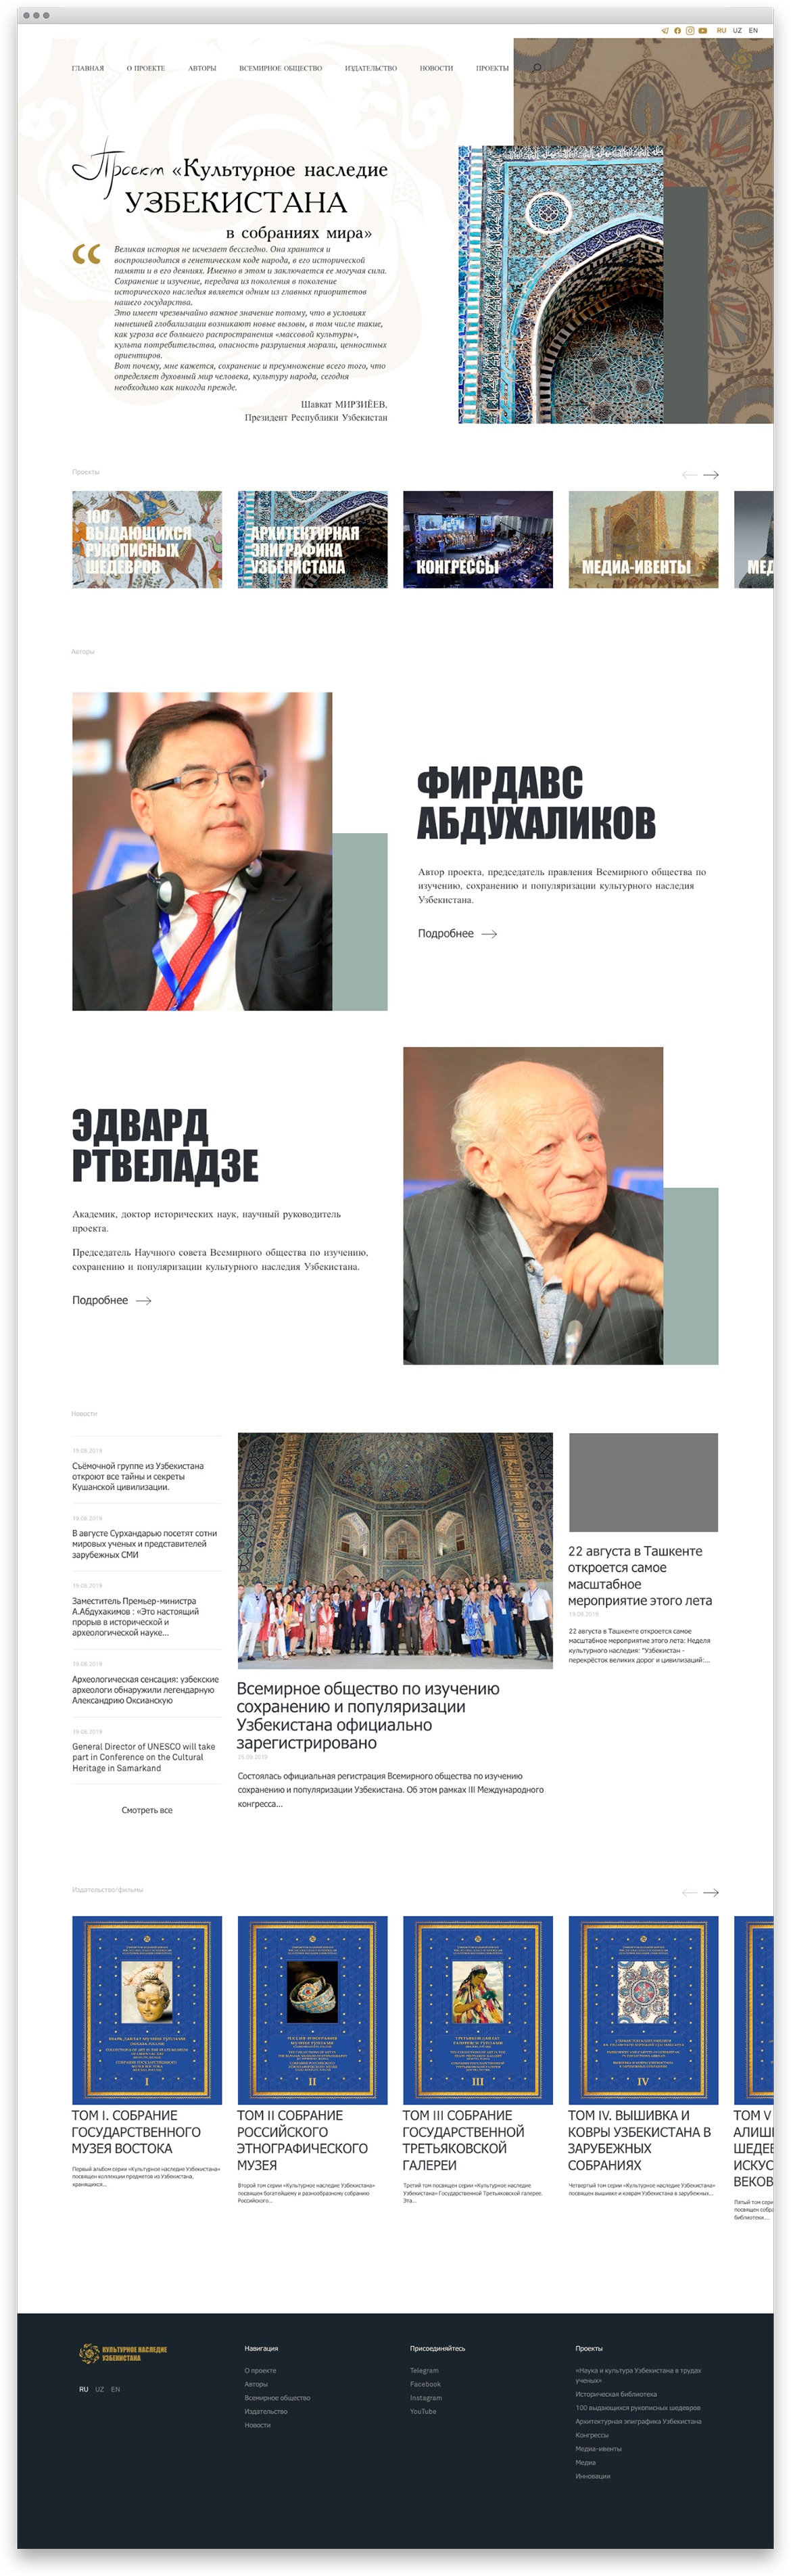 Сайт проекта «Культурное наследие Узбекистана в собраниях мира»